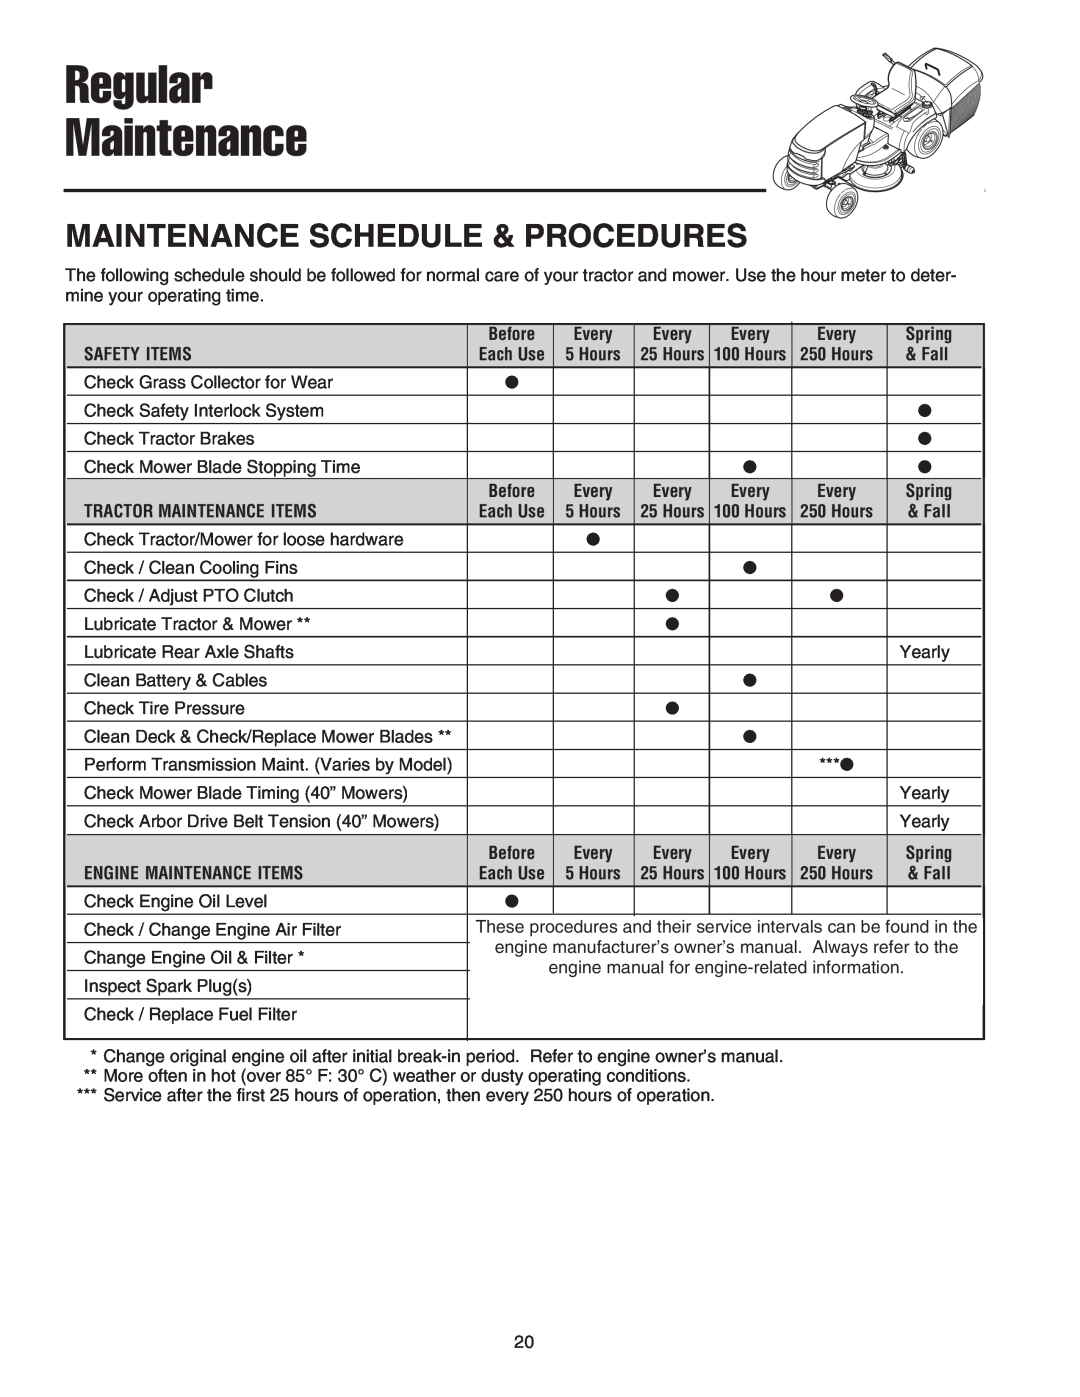 Snapper XL Series, 2400 XL Series, RD Series manual Regular Maintenance, Maintenance Schedule & Procedures 